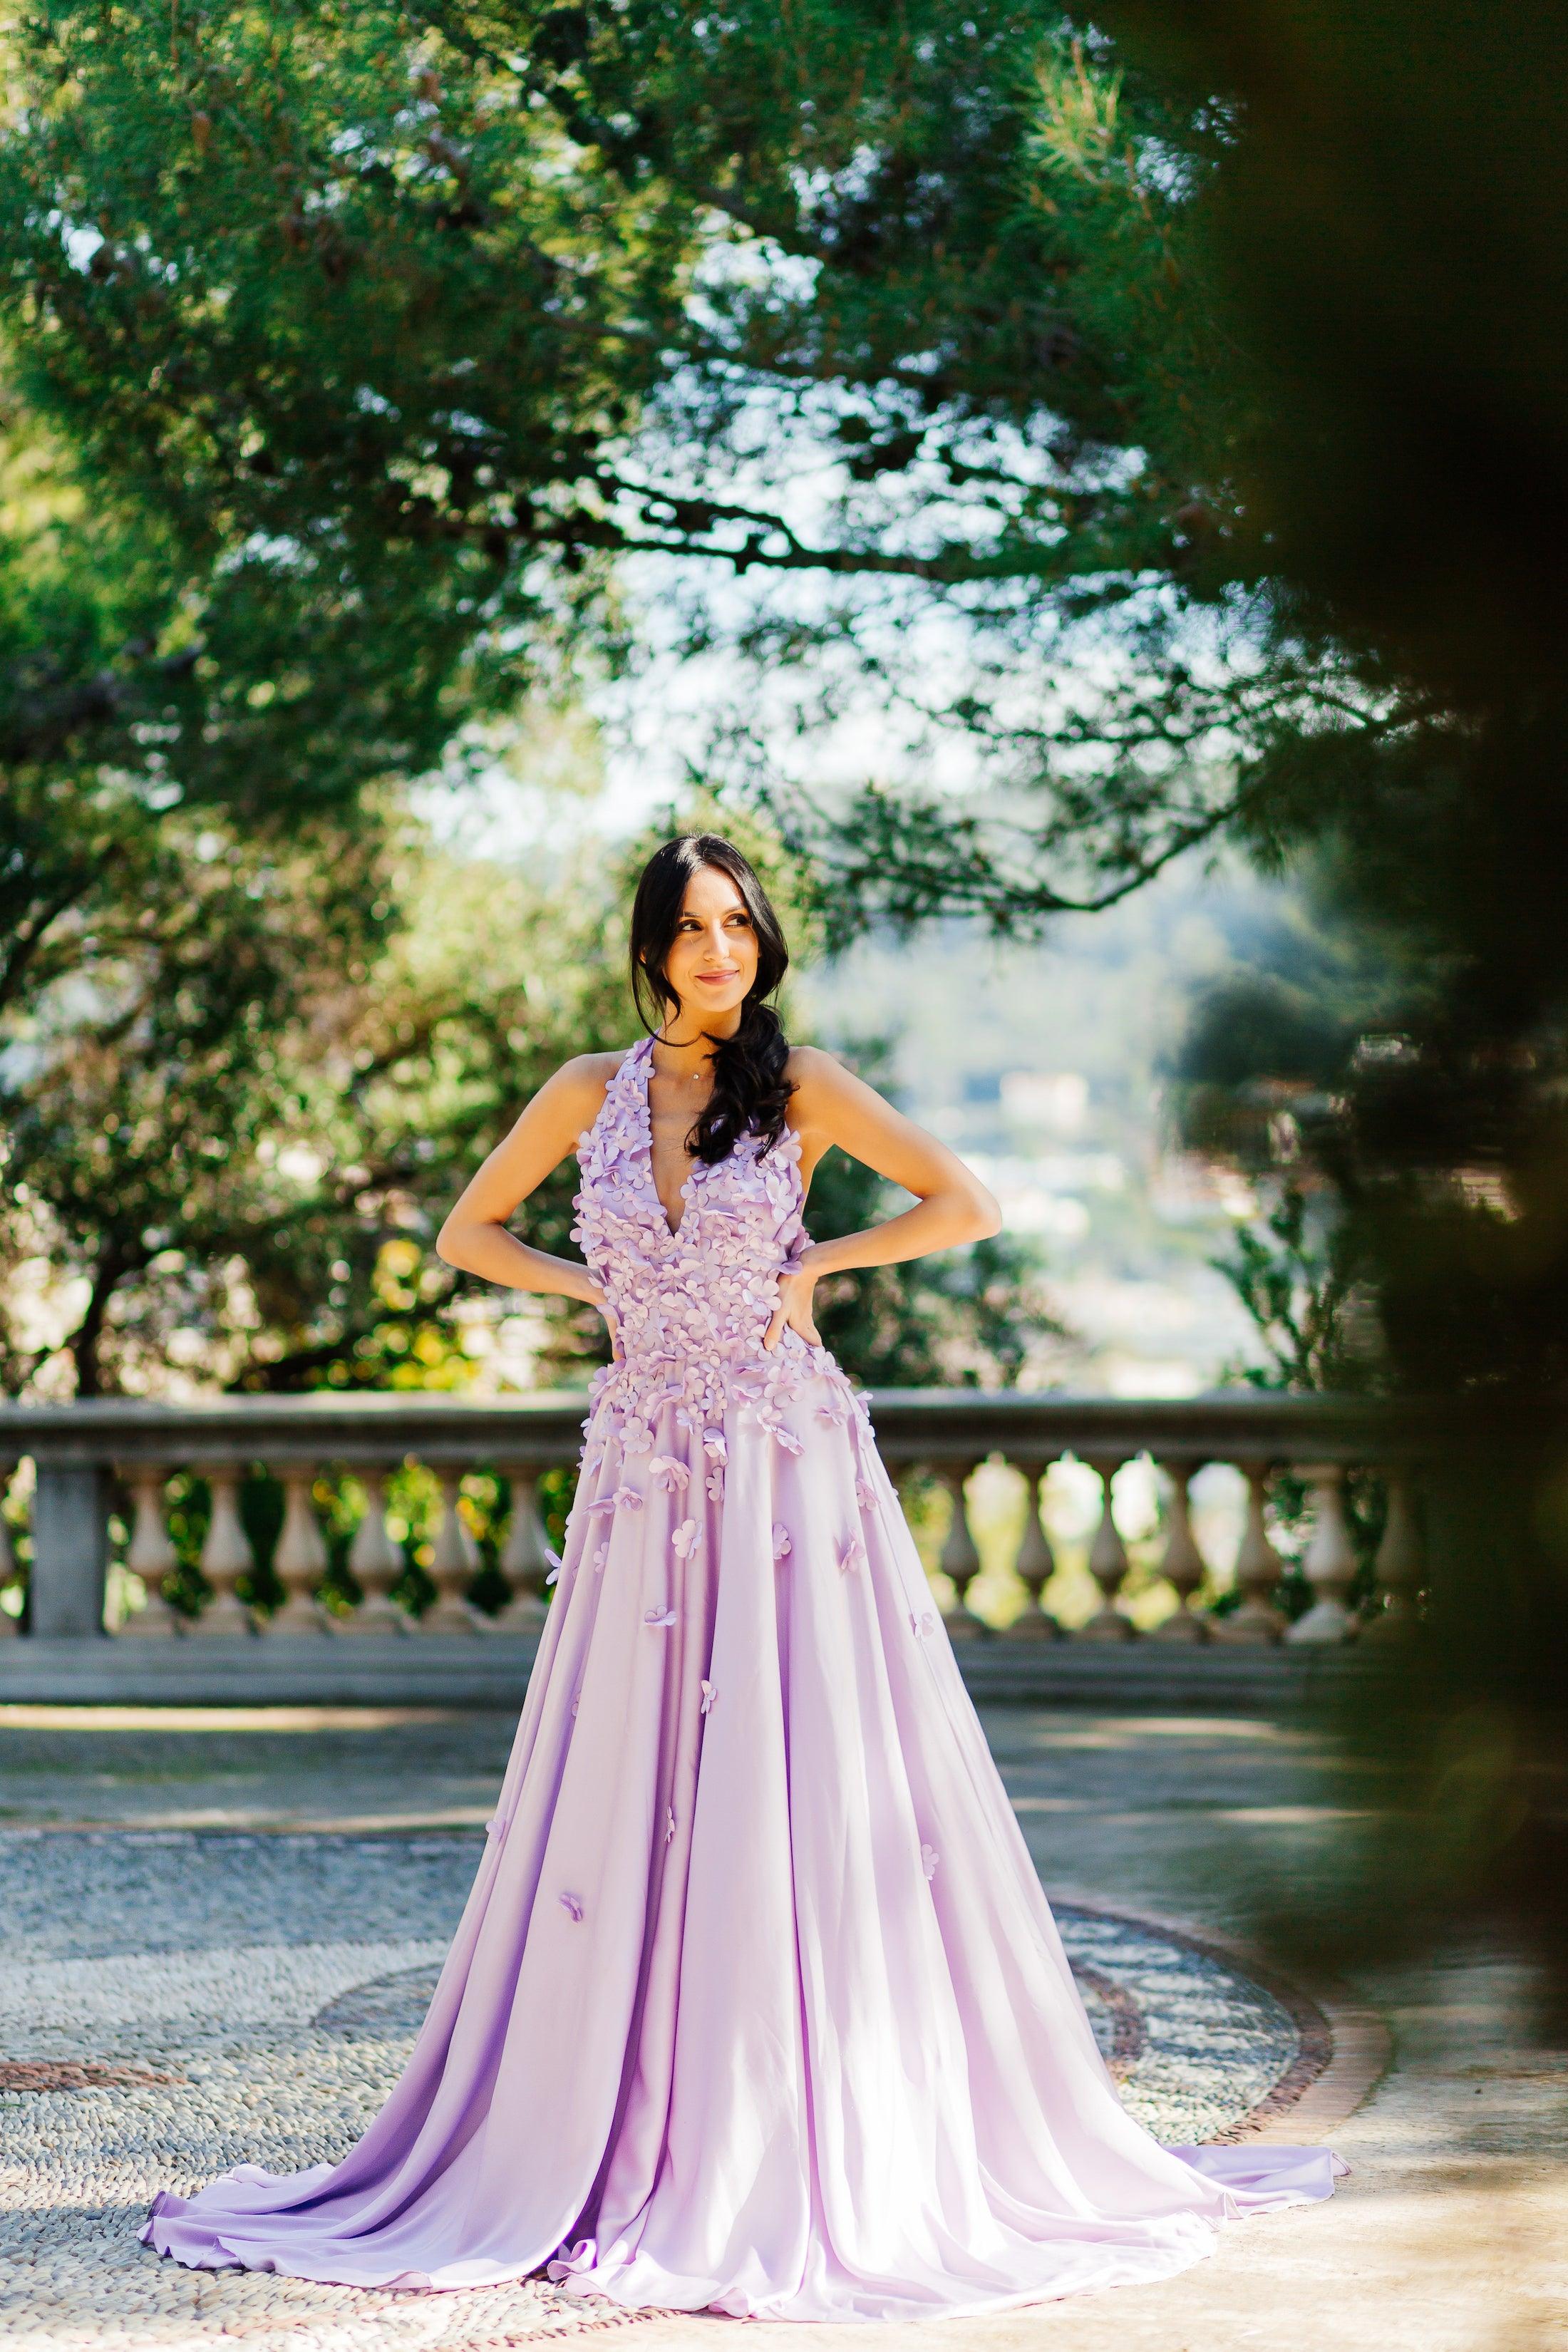 Halter Neck Wedding Dress | Lavender Wedding Gown | Dare and Dazzle